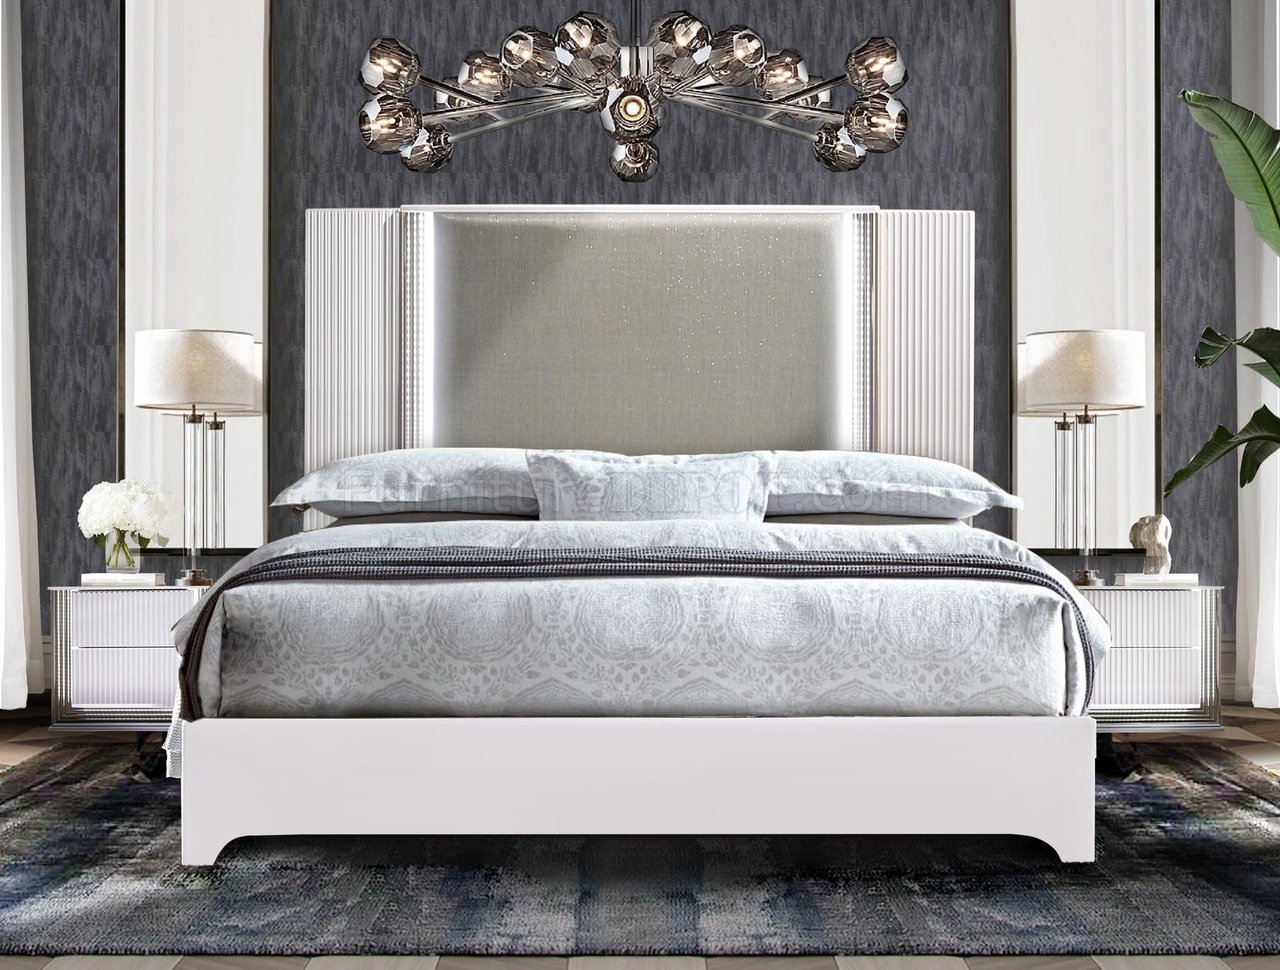 aspen white bedroom furniture